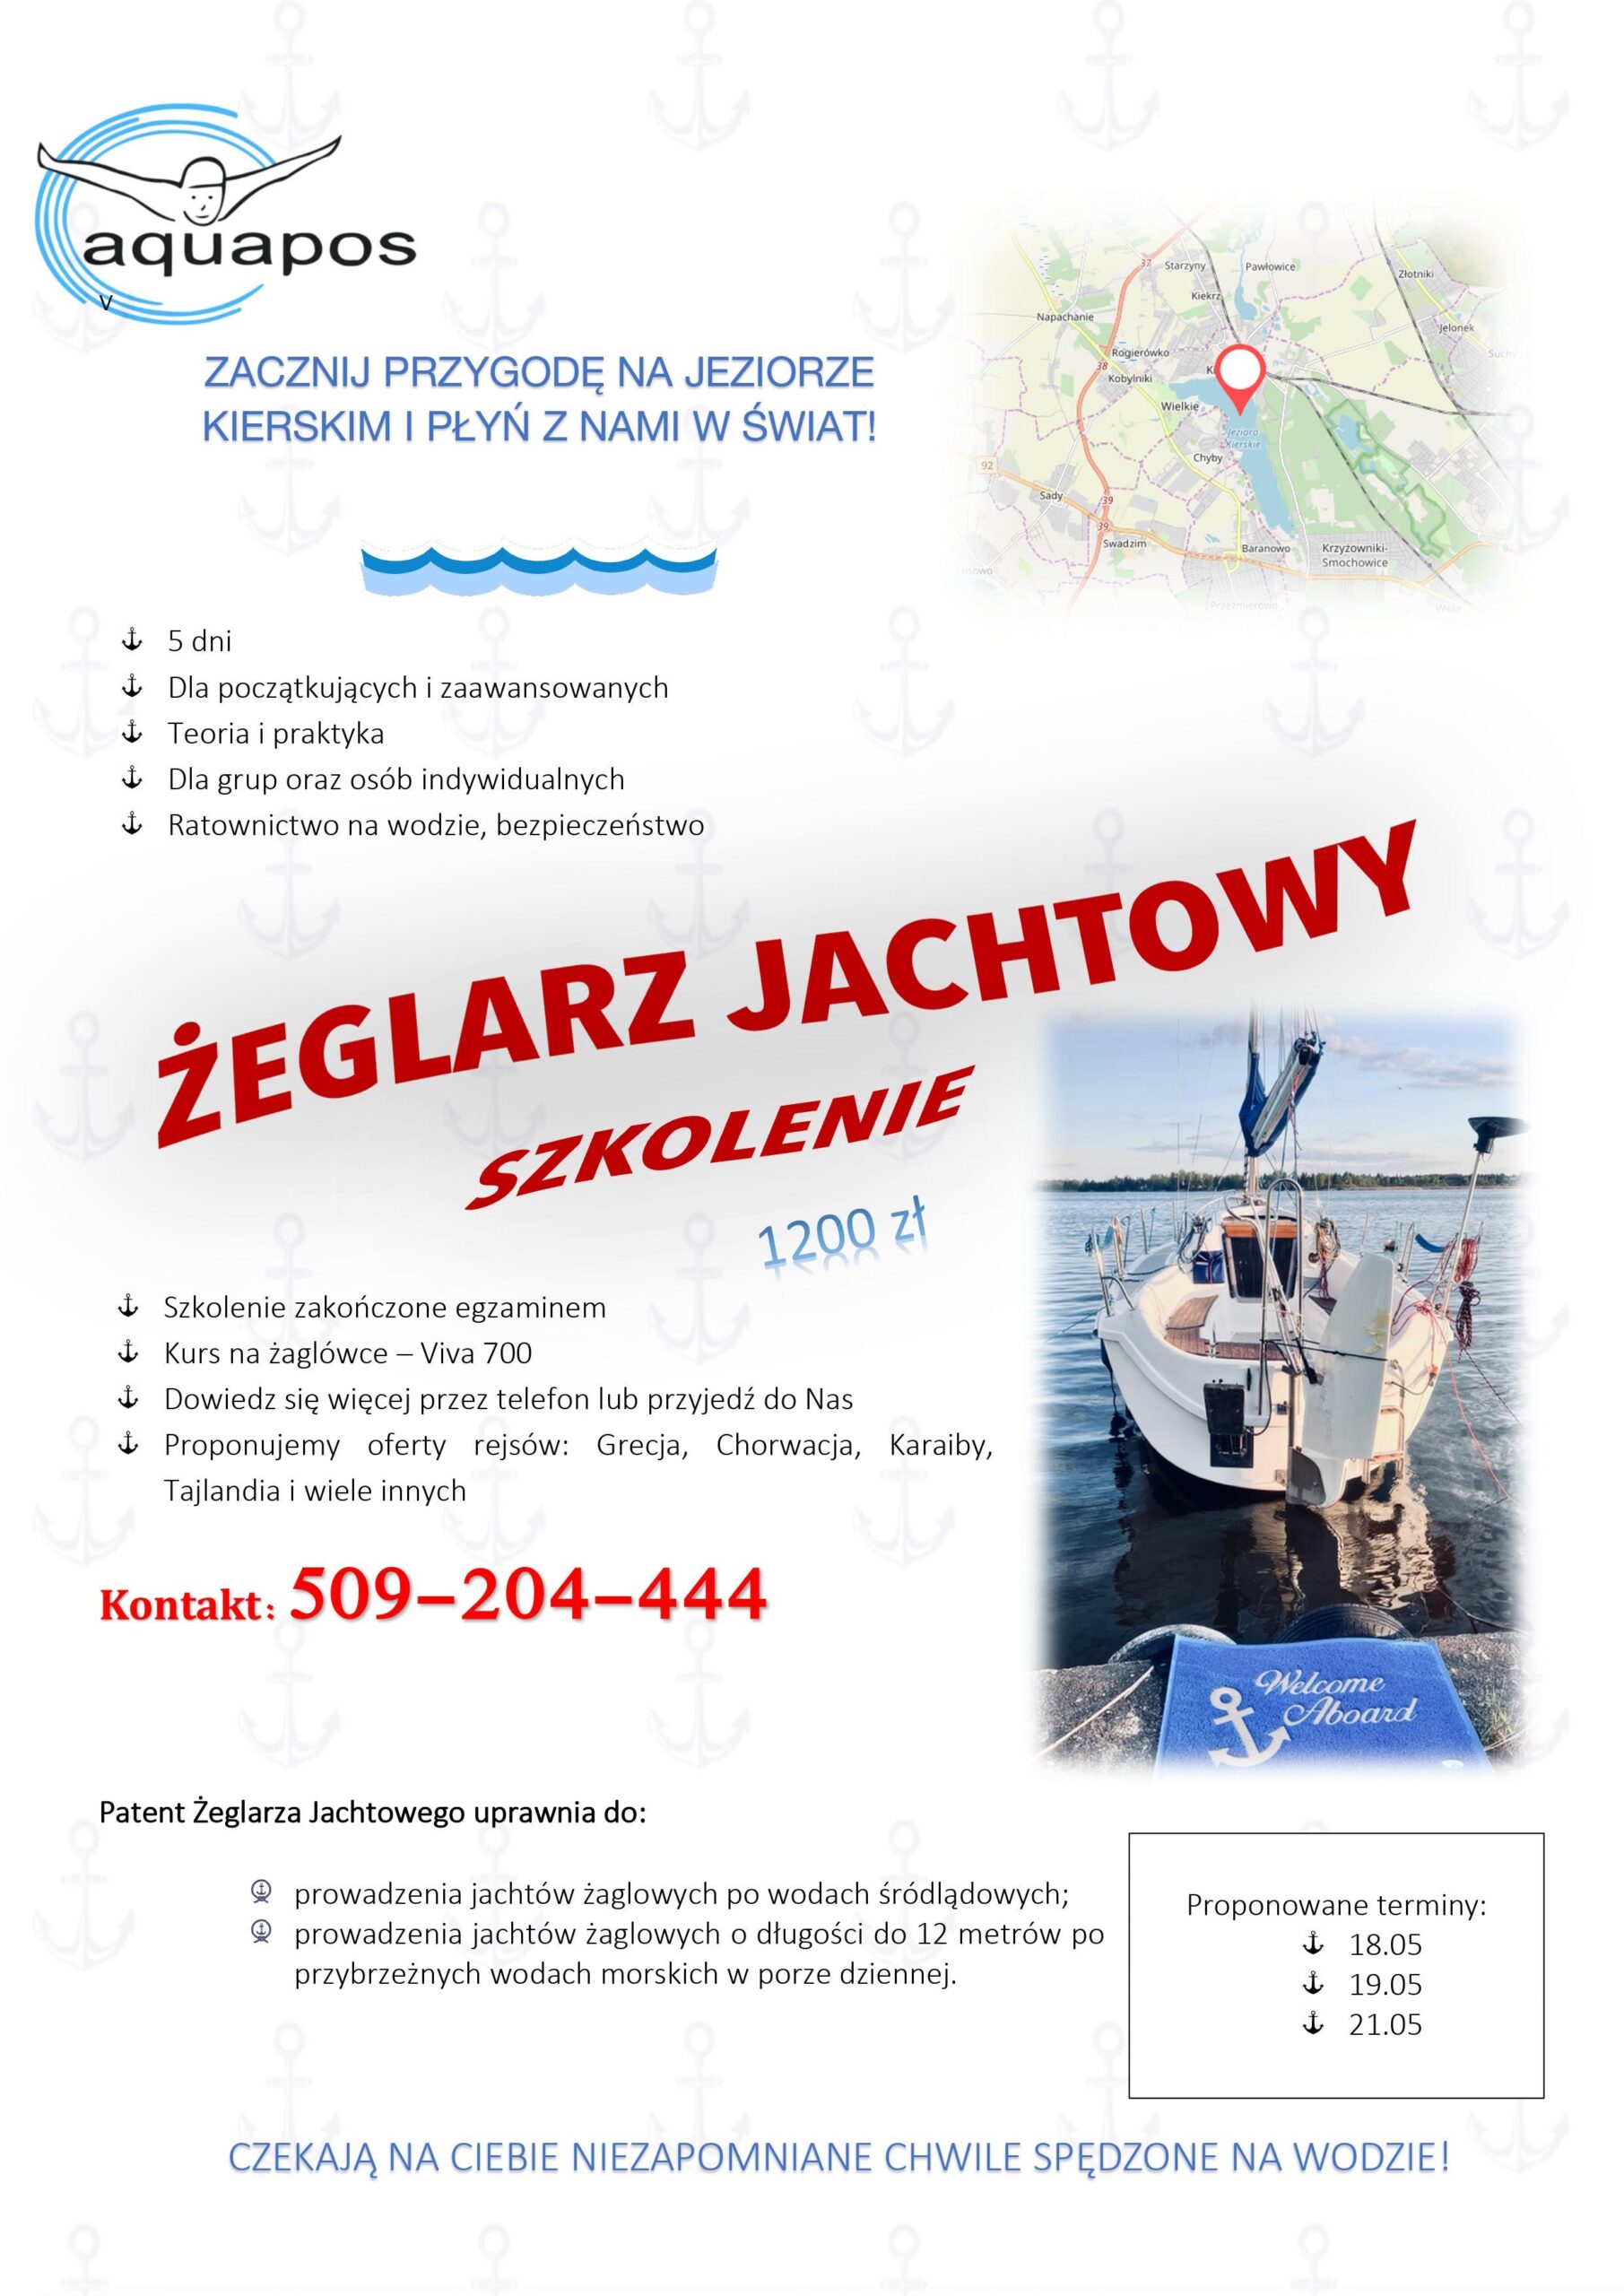 żeglarz jachtowy- jezioro Kierskie – szkolenie